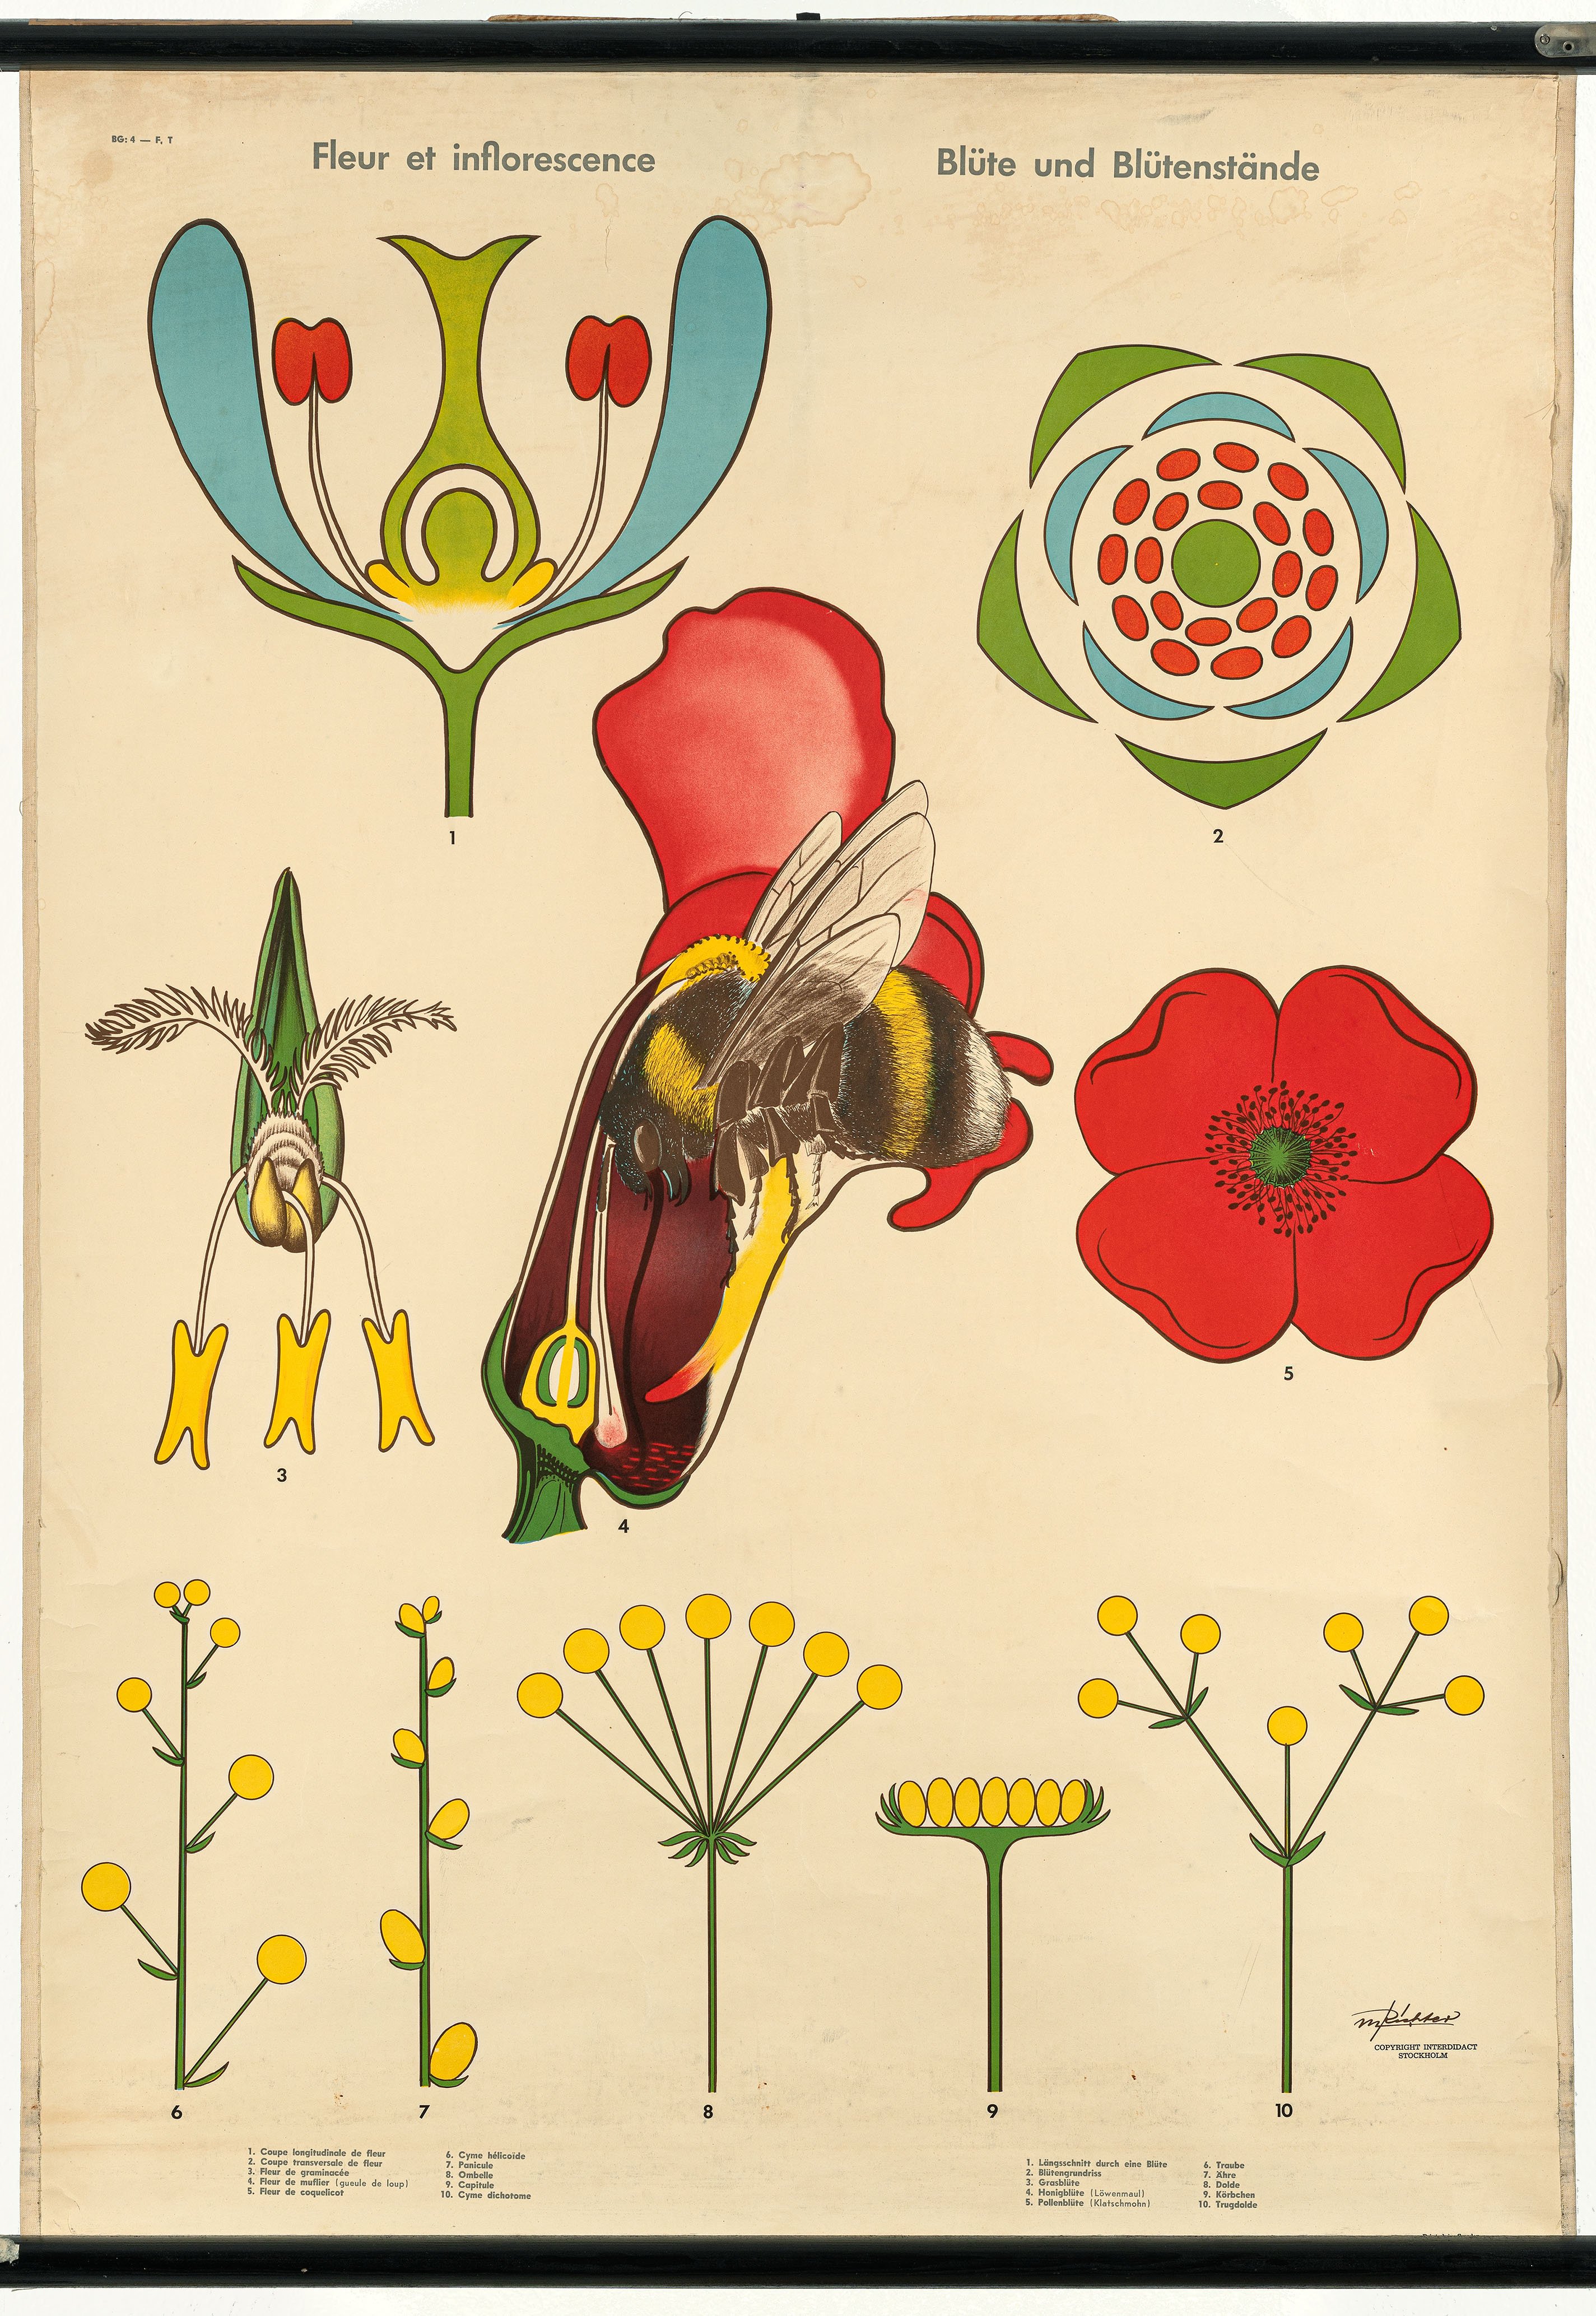 Schulwandbild "Fleur et inflorescense / Blüte und Blütenstände" (Mitte Museum/Bezirksamt Mitte von Berlin CC BY-NC-ND)